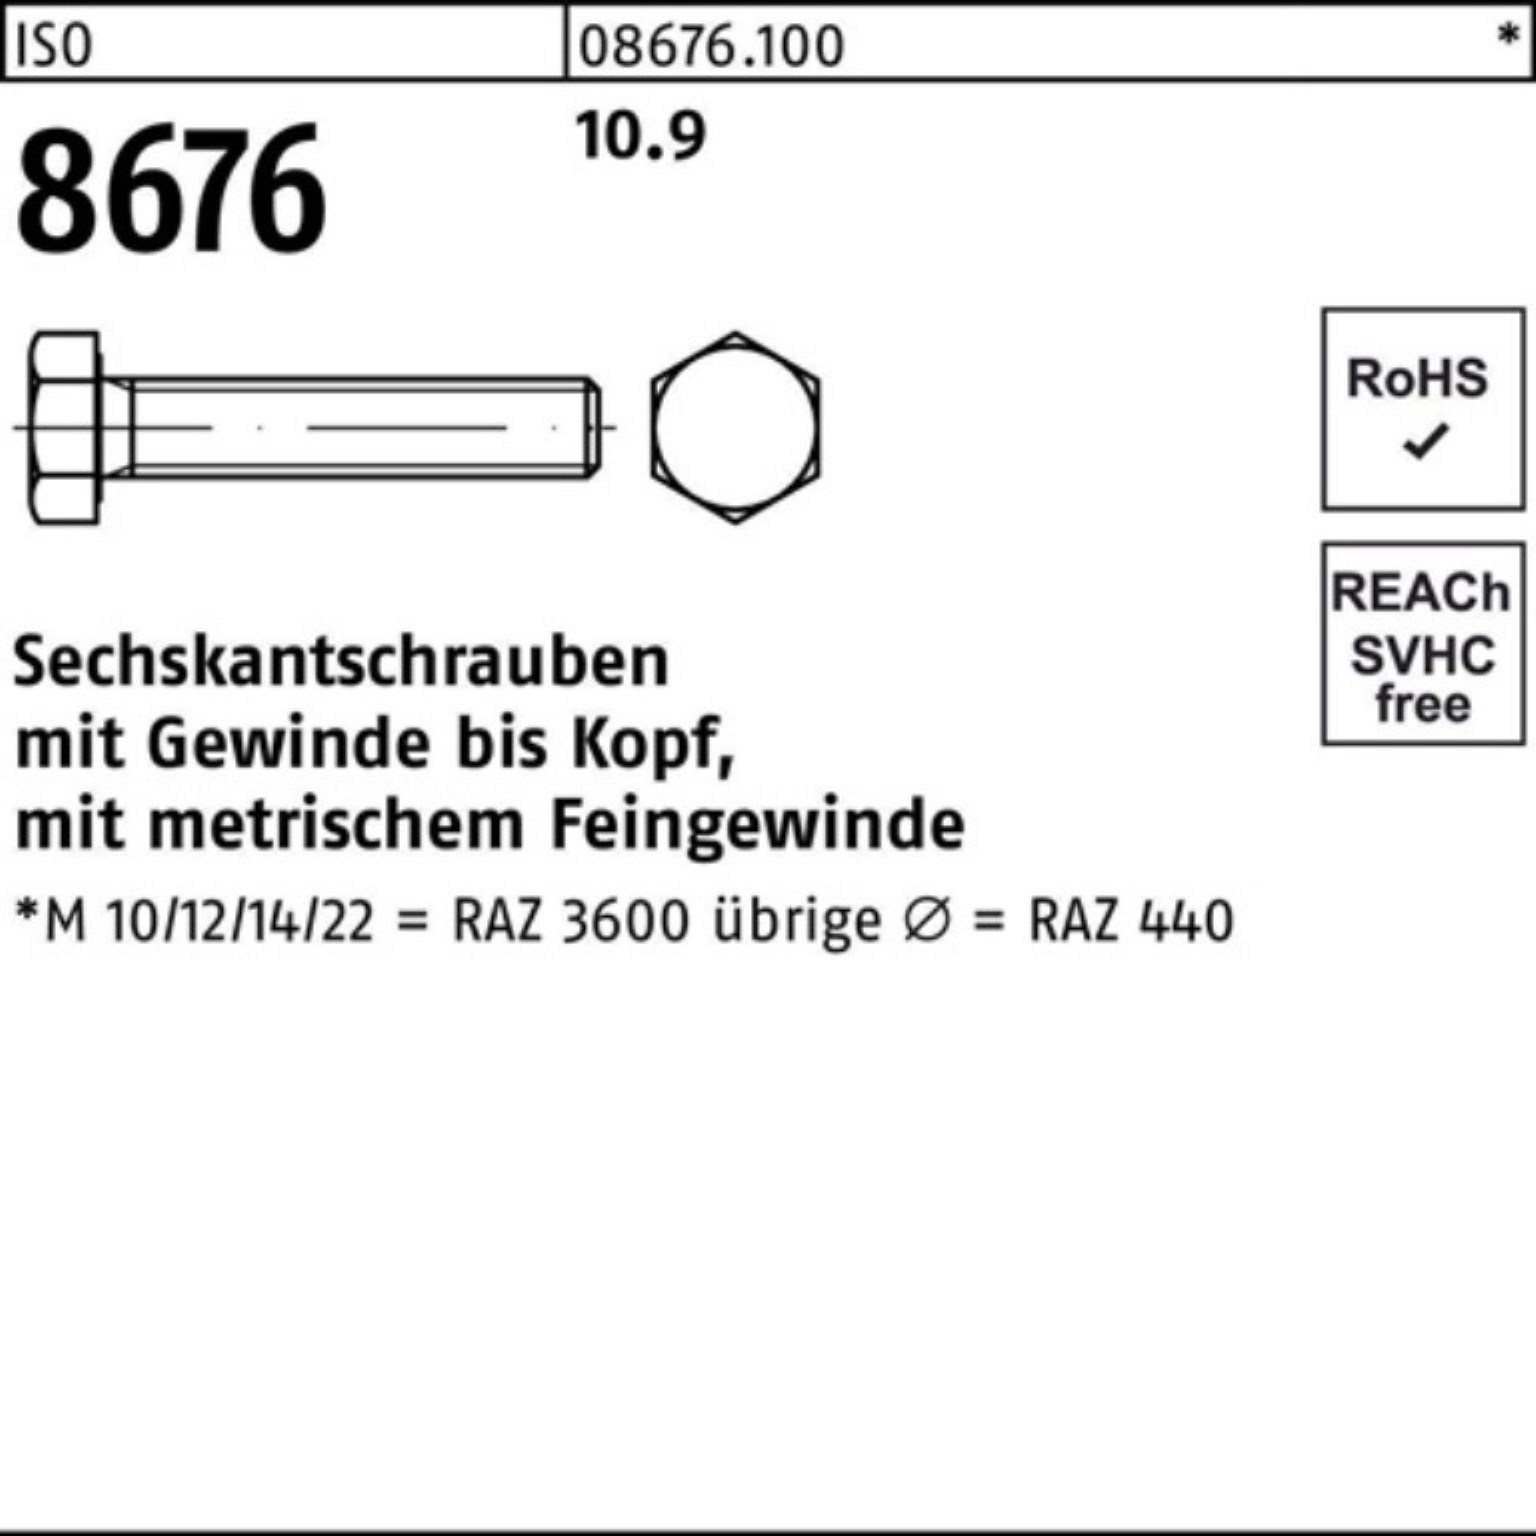 ISO Sechskantschraube Pack M10x1,25x 8676 Stück 100er Sechskantschraube VG 60 10.9 100 Reyher